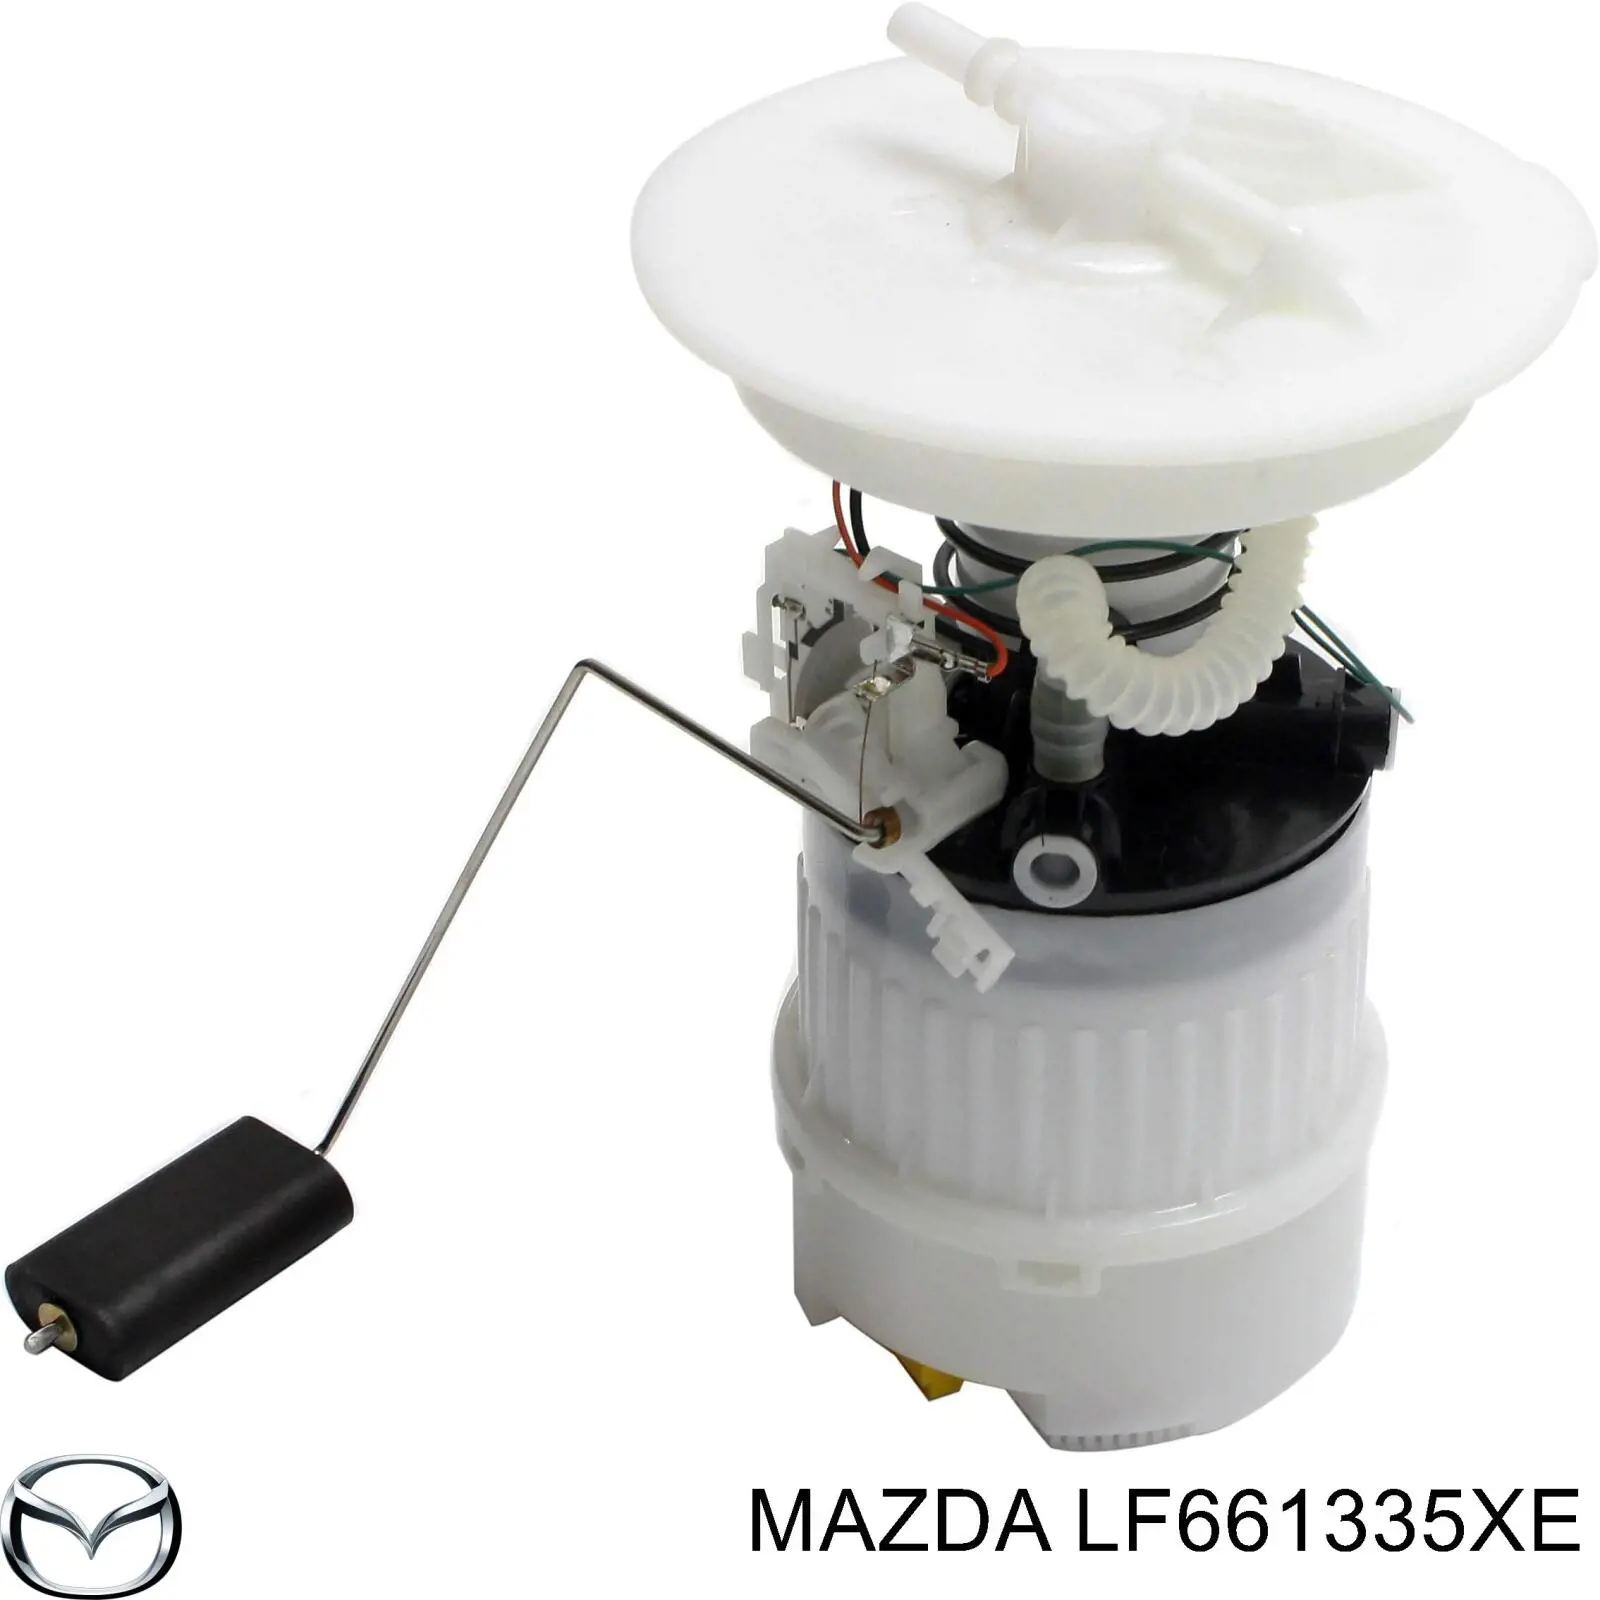 Топливный насос электрический погружной Mazda LF661335XE